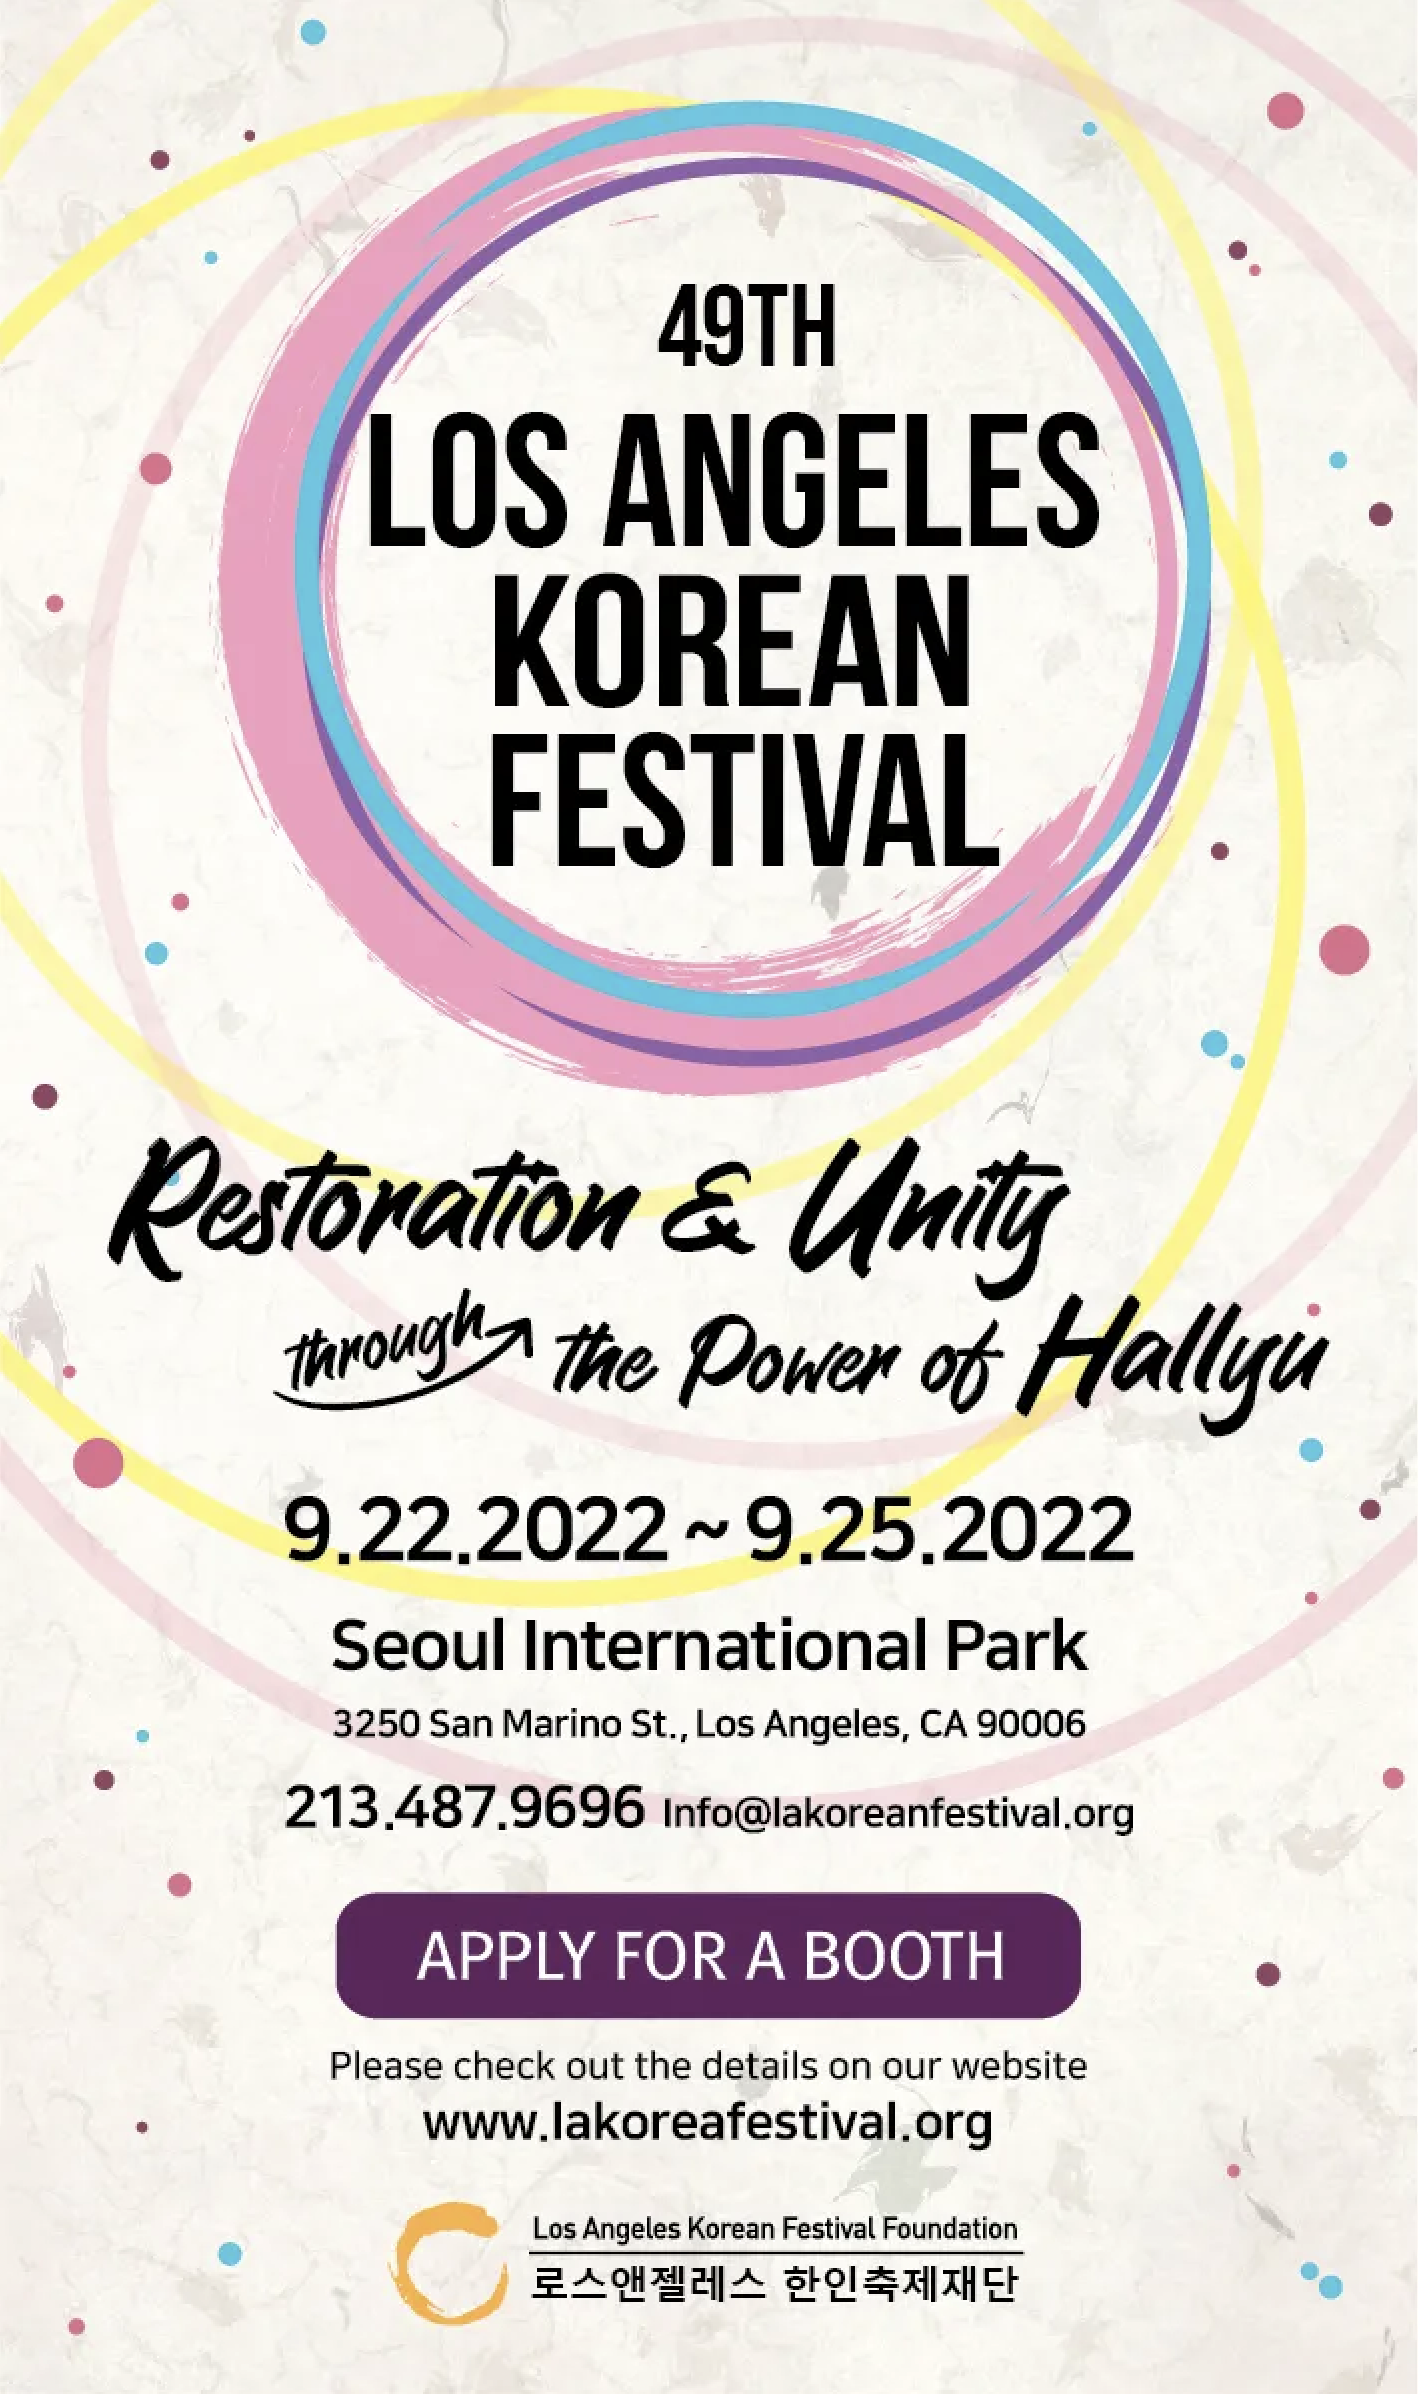 Korean festival